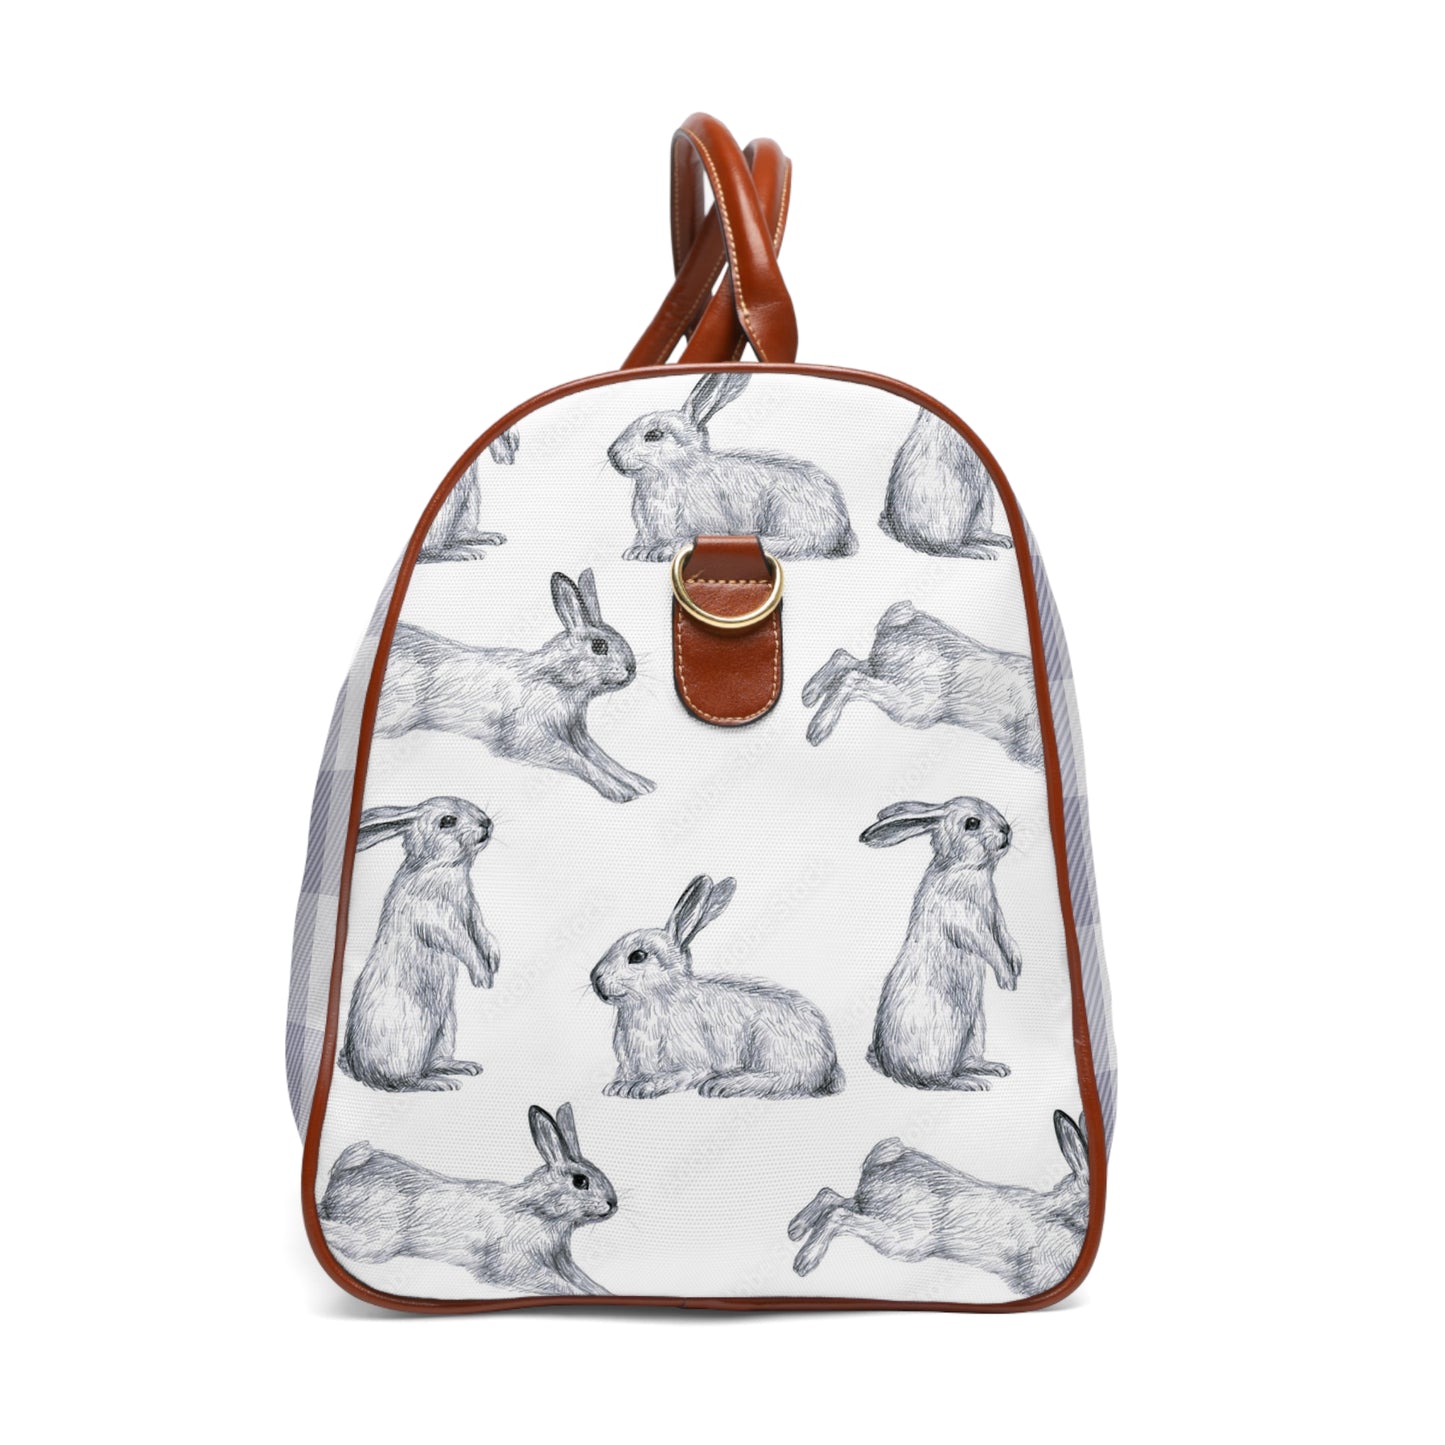 Buffalo check and Hopping Bunny Waterproof Travel Bag